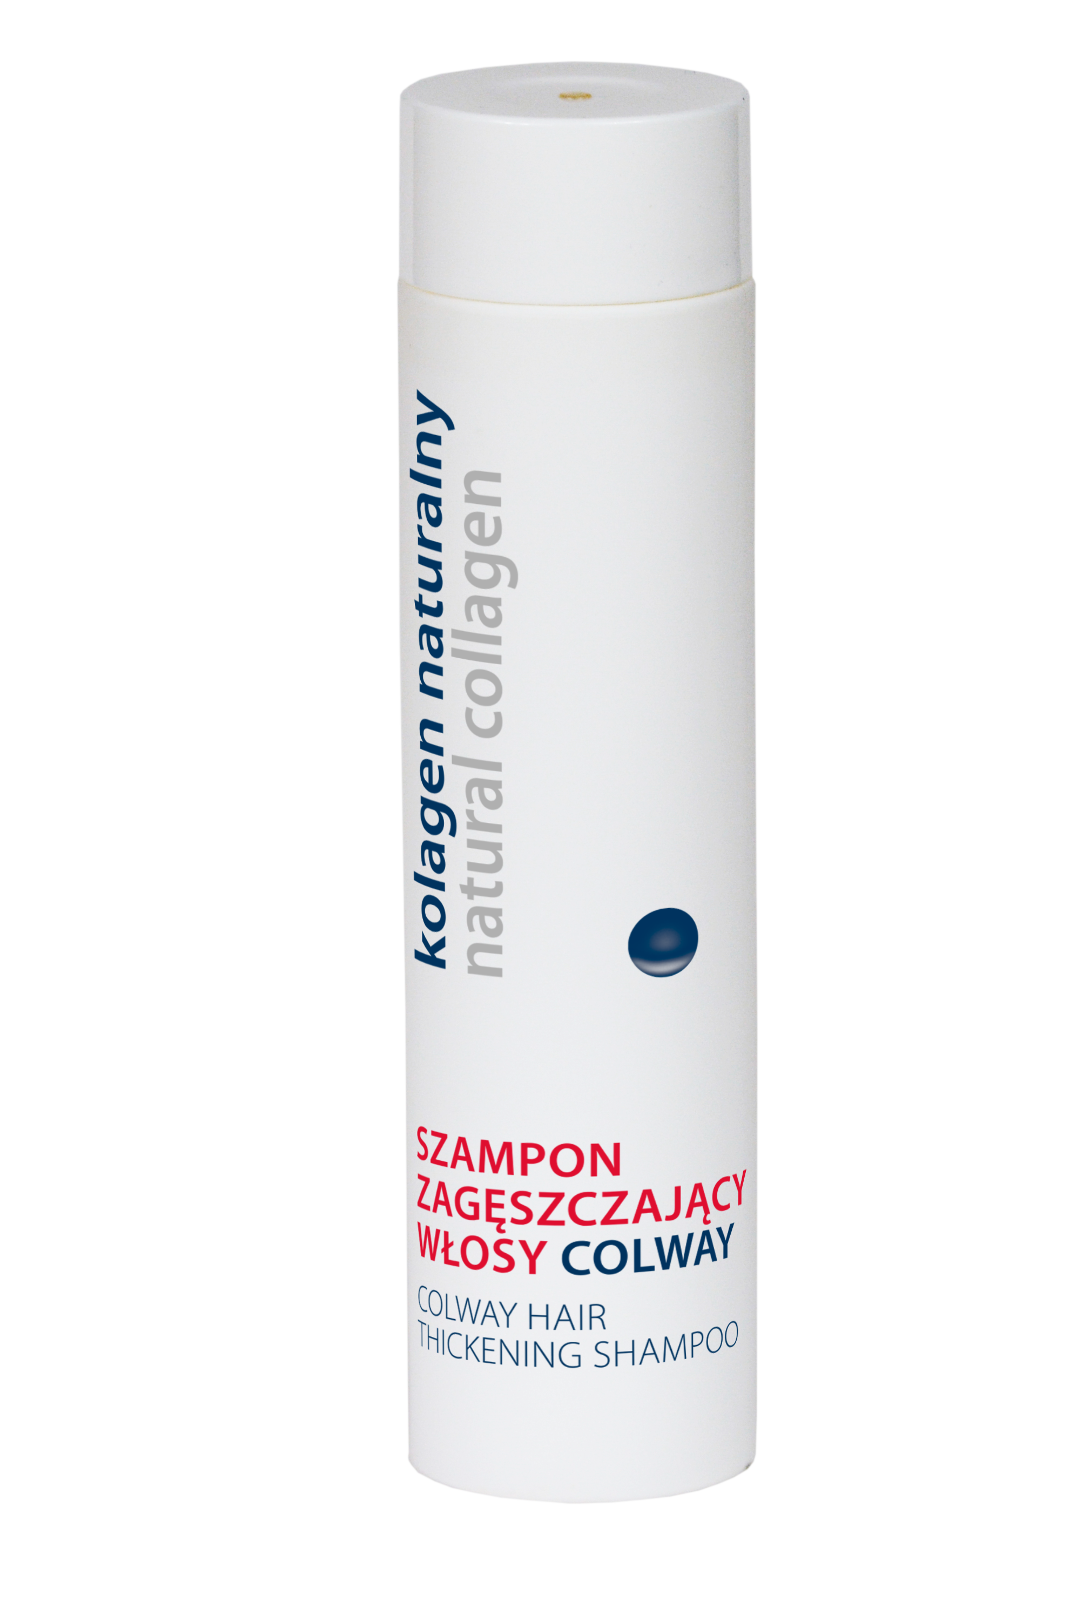 kolagen naturalny szampon zagęszczający włosy colway